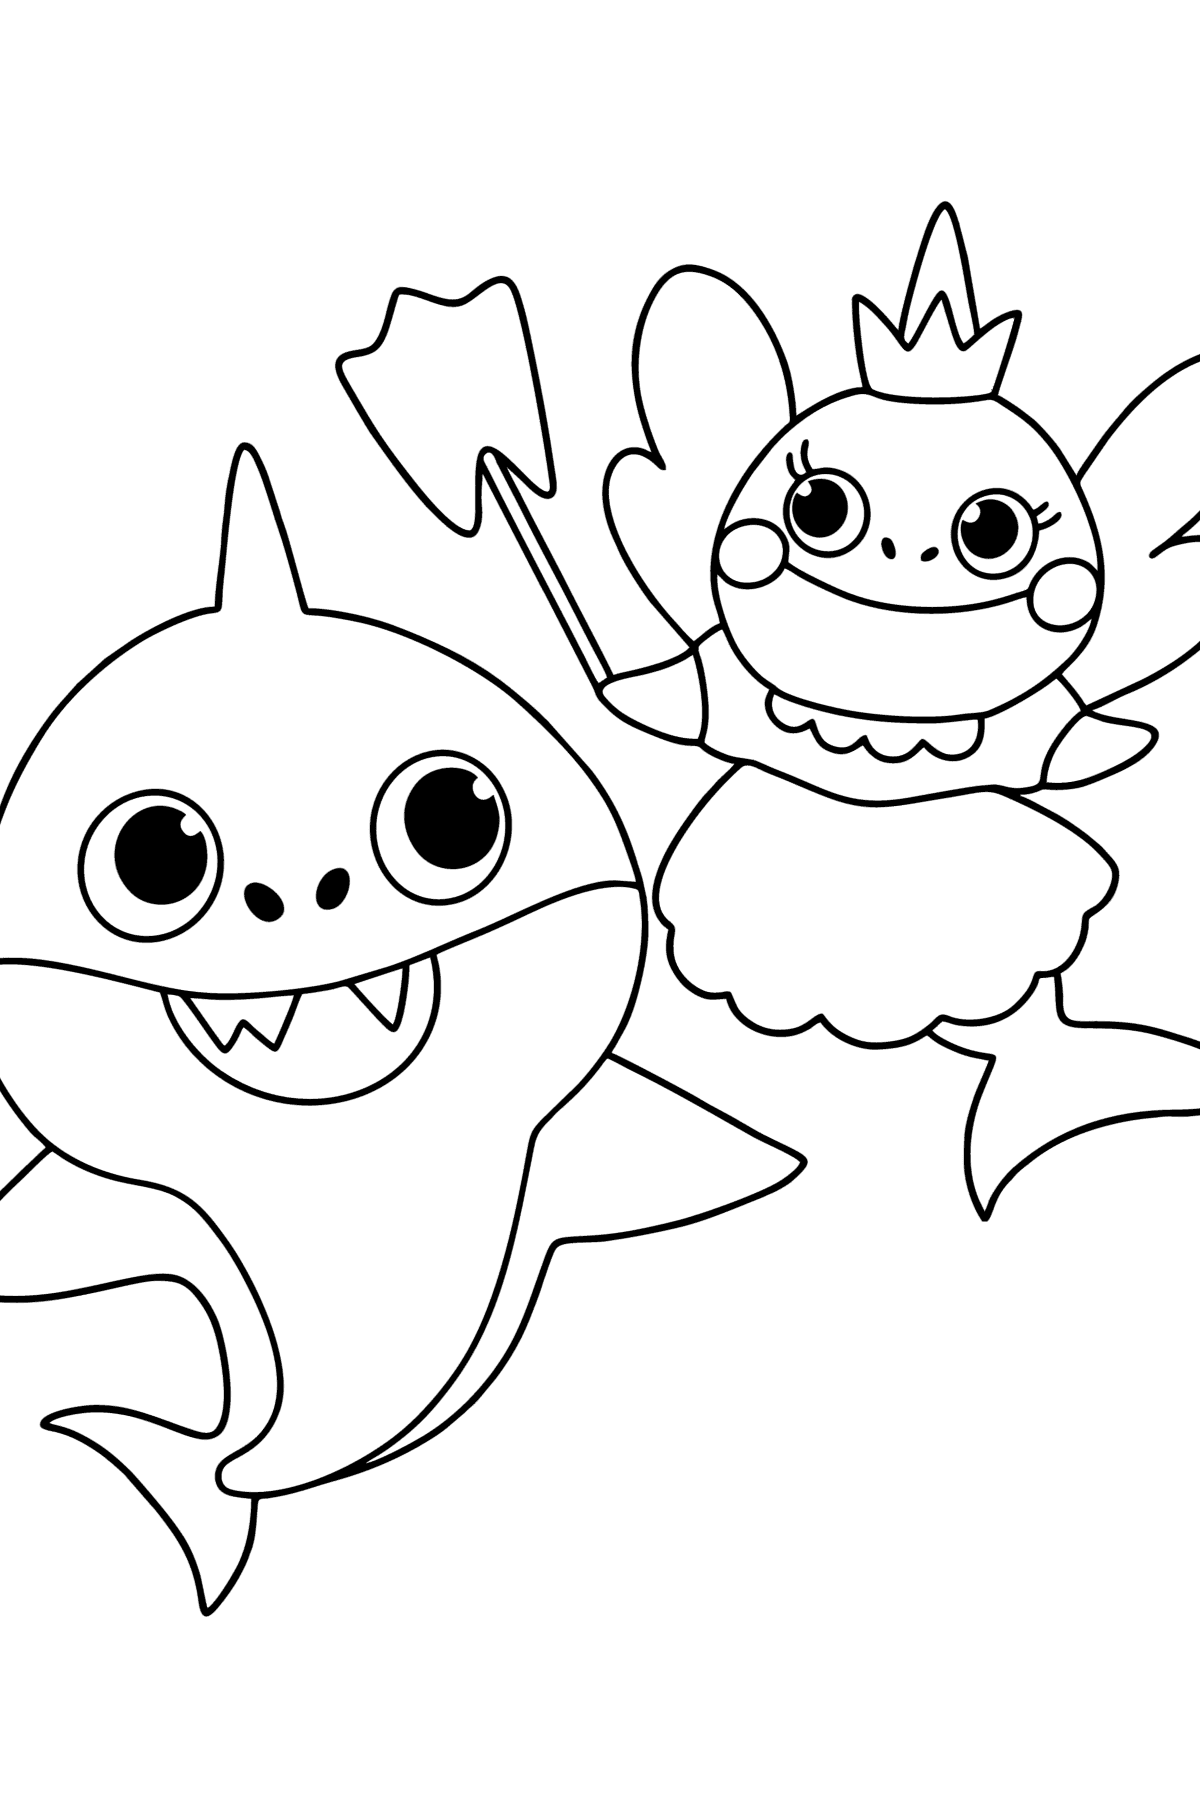 Tandfe og Baby Shark tegning til farvning - Tegninger til farvelægning for børn